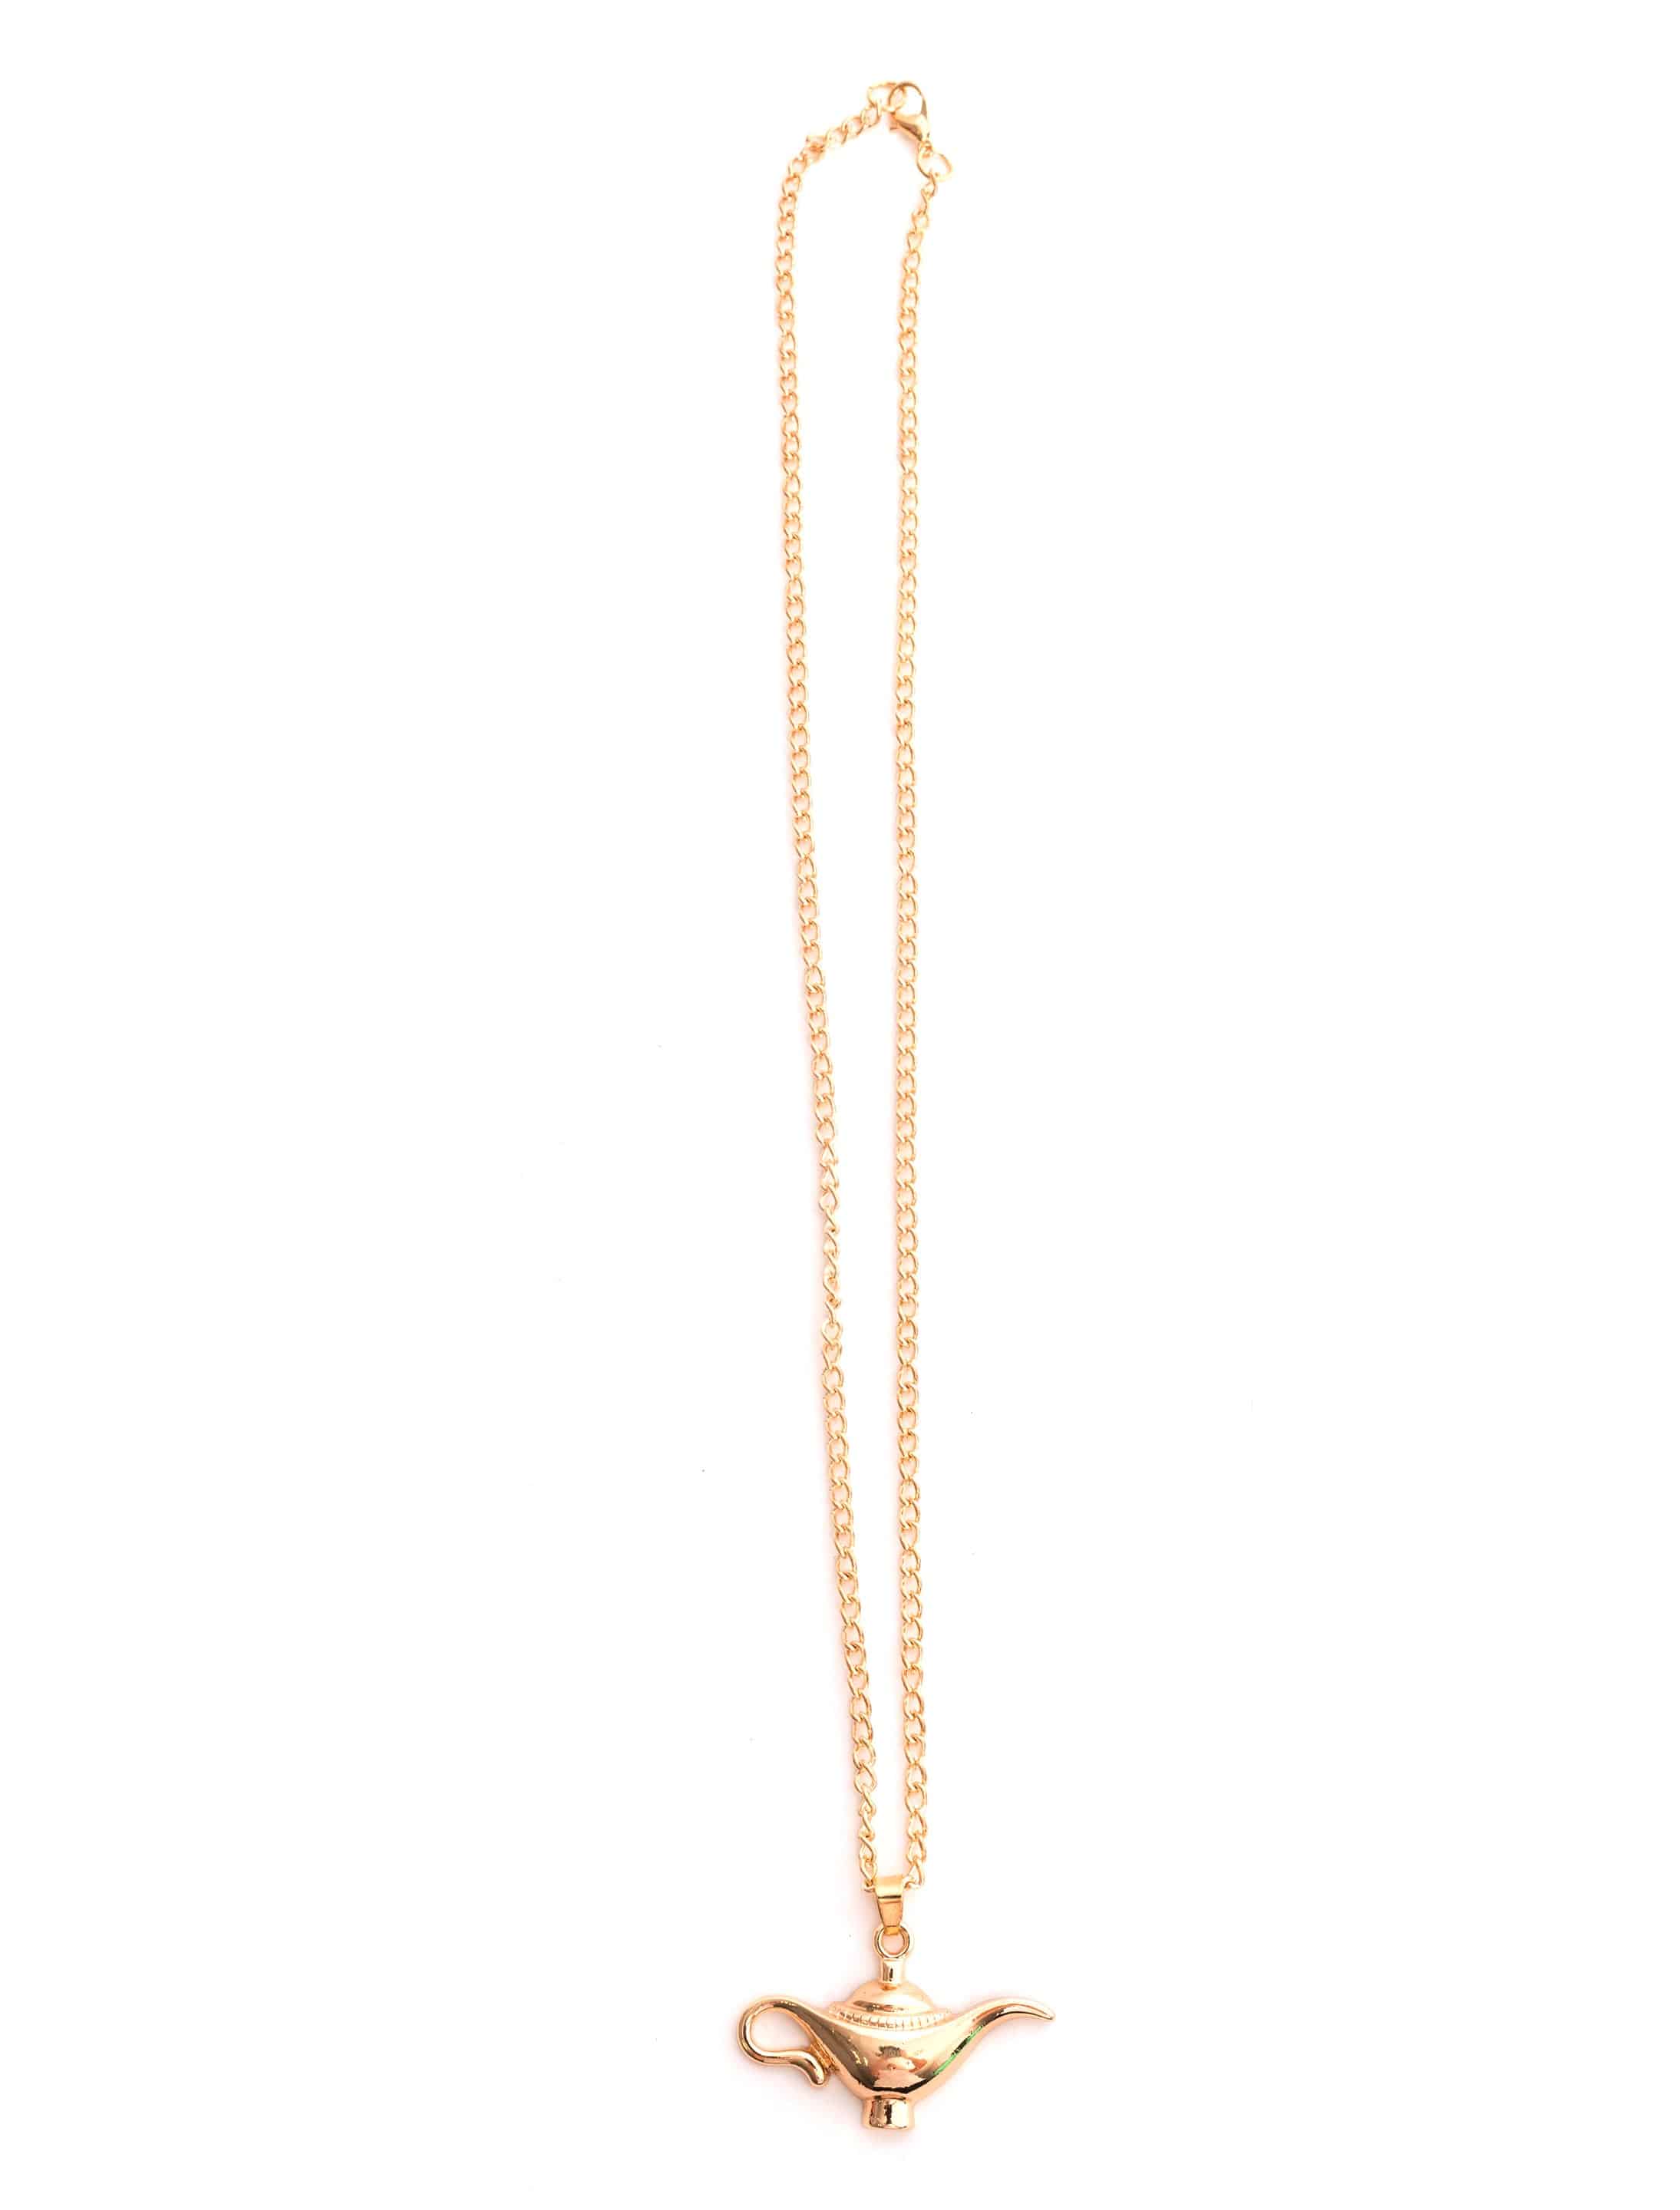 Halskette Wunderlampe gold 4cm